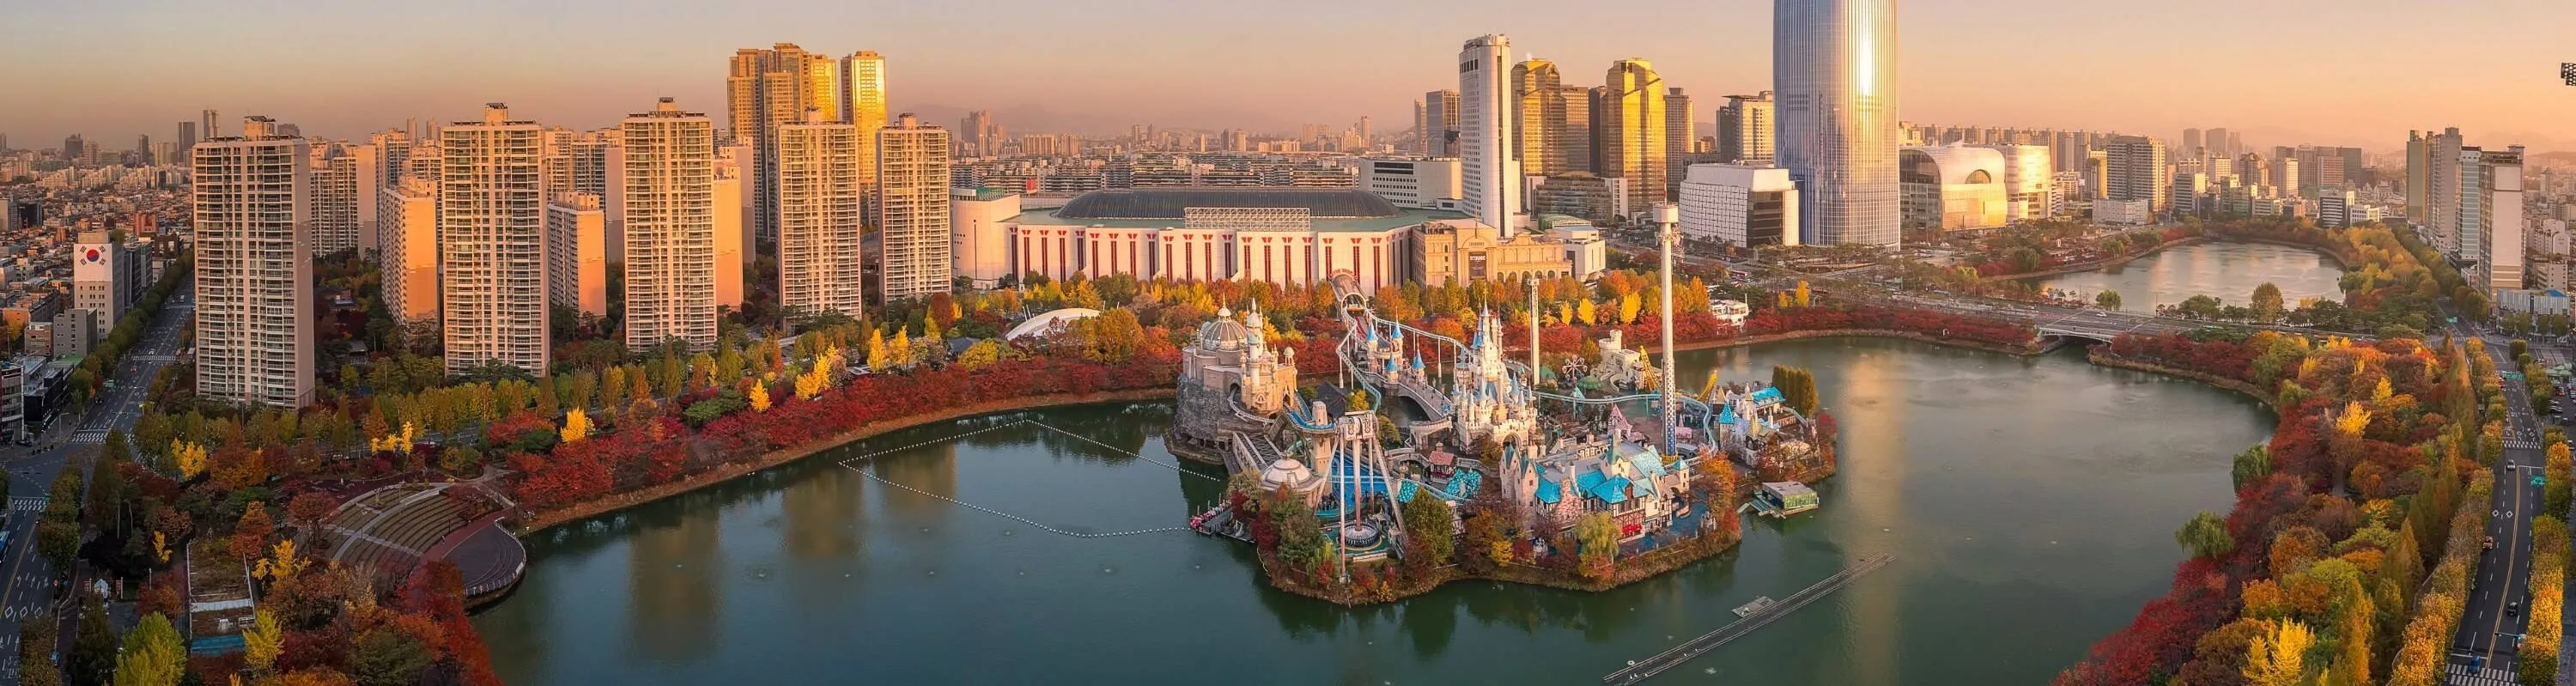 Maailma suurim sisetingimustesse loodud teemapark - Lotte World - ReisiGuru.ee